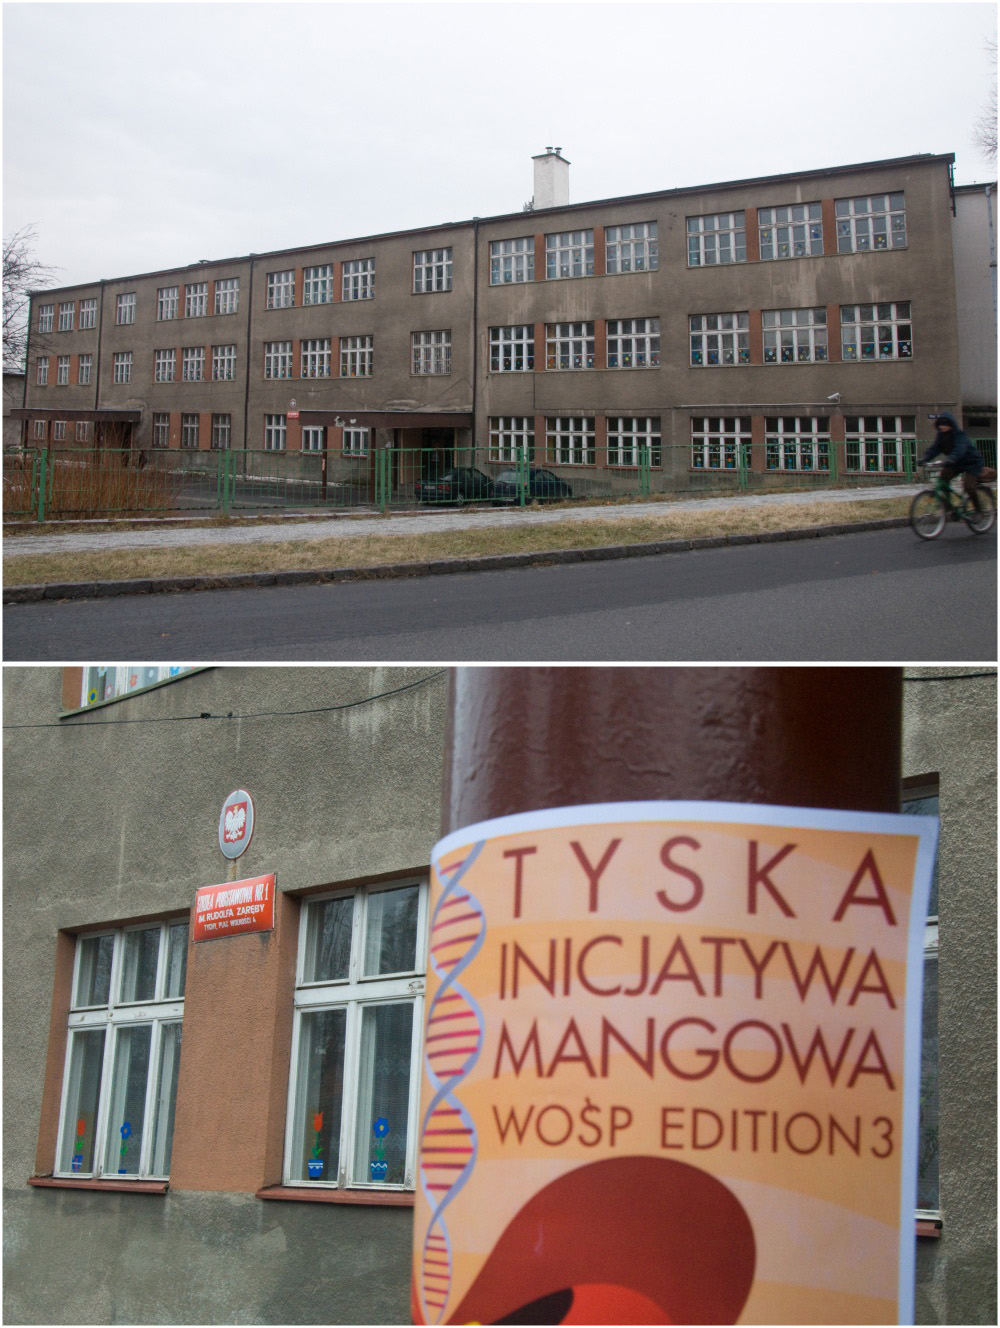 Tyska Inicjatywa Mangowa: WOŚP edition 3 (Kwak): 002